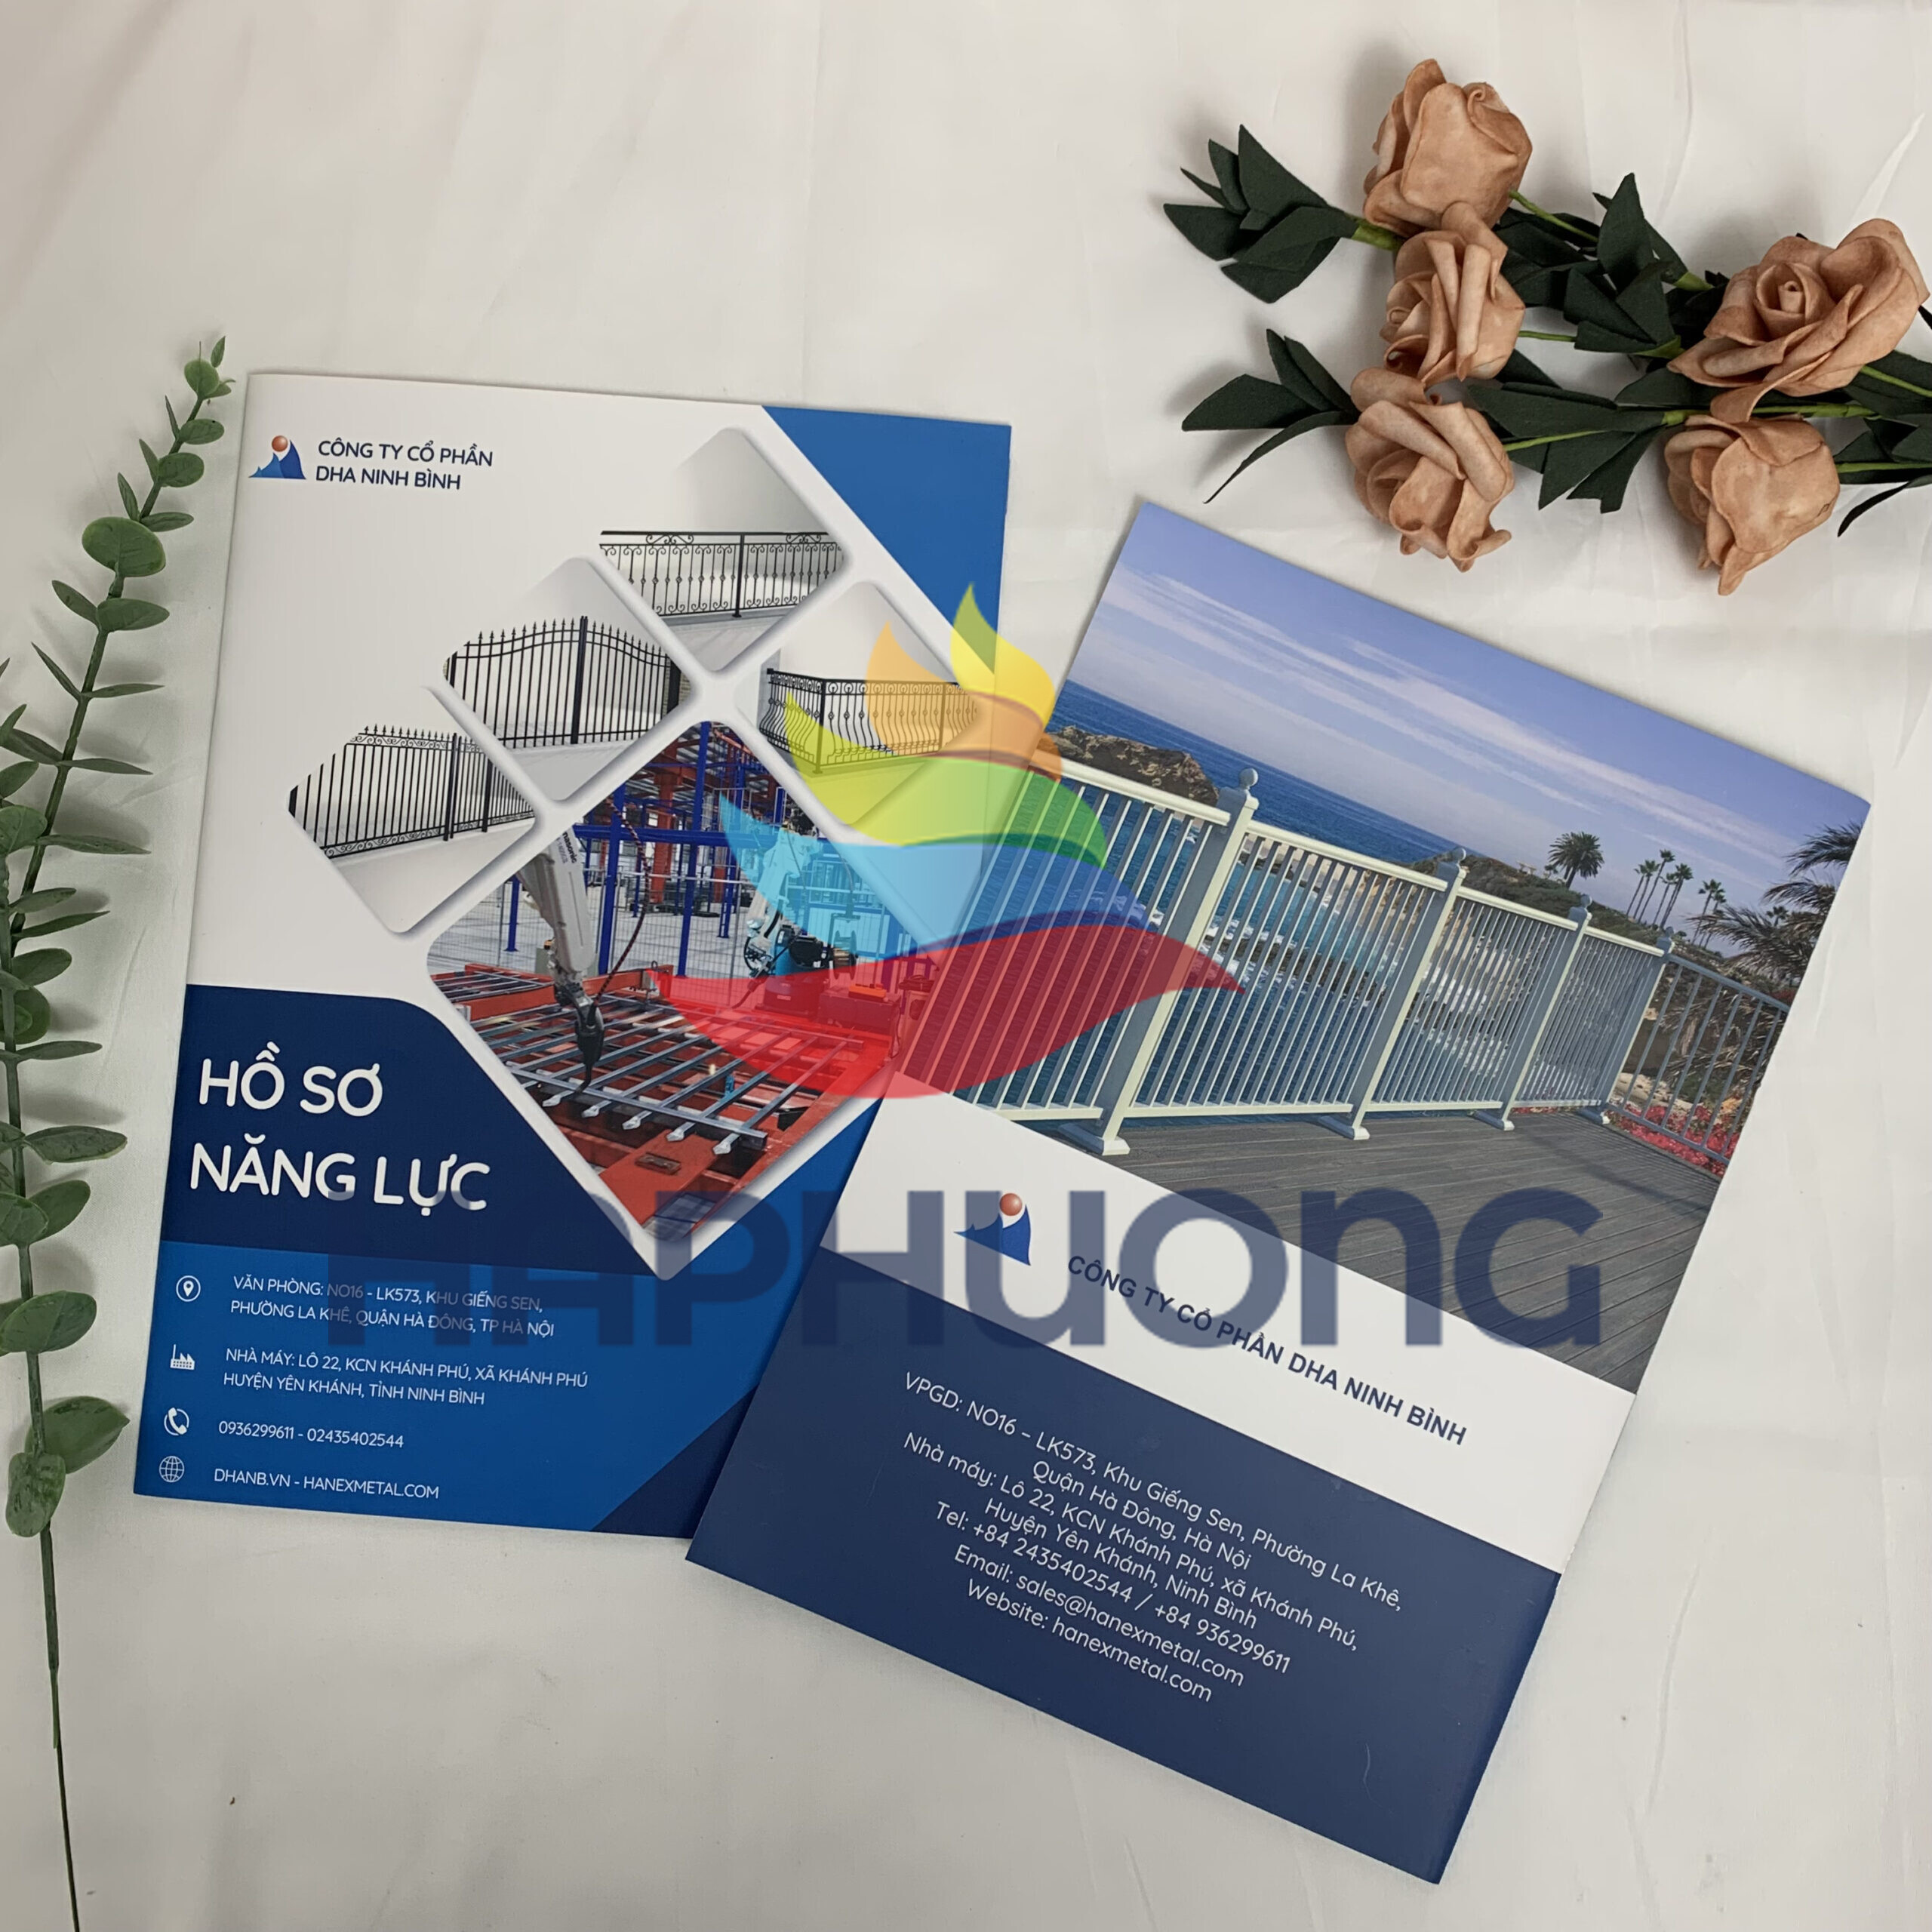 Mẫu catalogue giới thiệu công ty cổ phần DHA Ninh Bình chuyên nghiệp